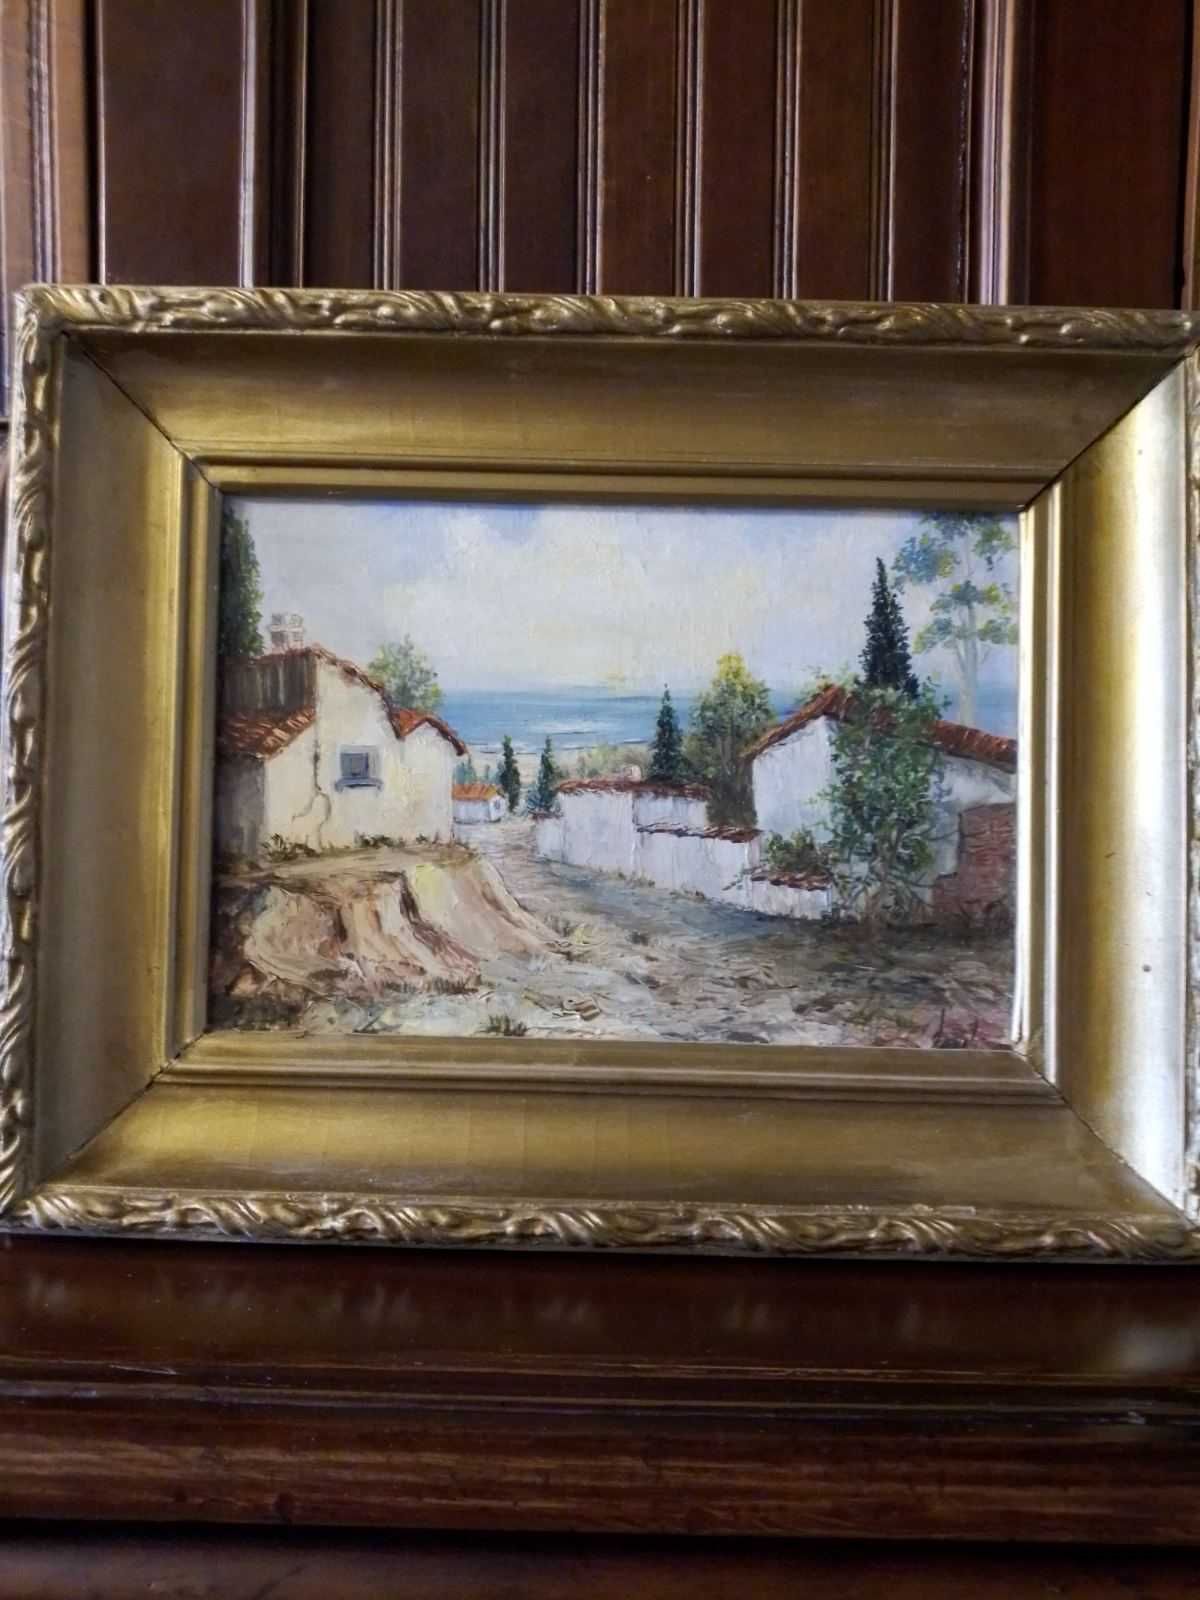 Картина "Рыбацкая деревня",холст,масло,1985-1990гг